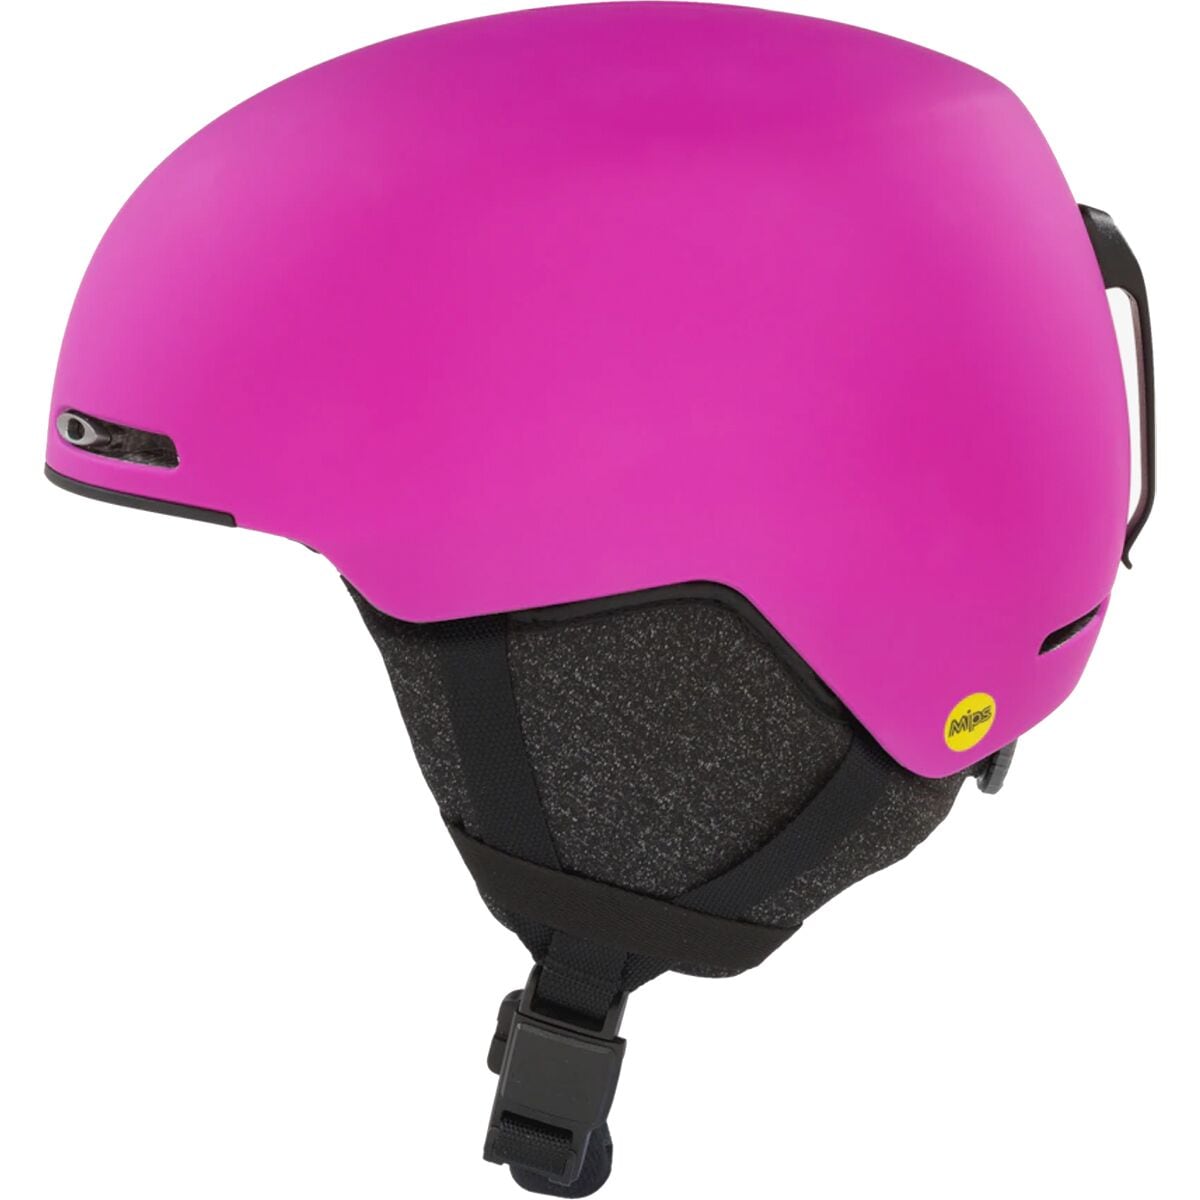 Oakley Mod 1 MIPS Helmet - Ski